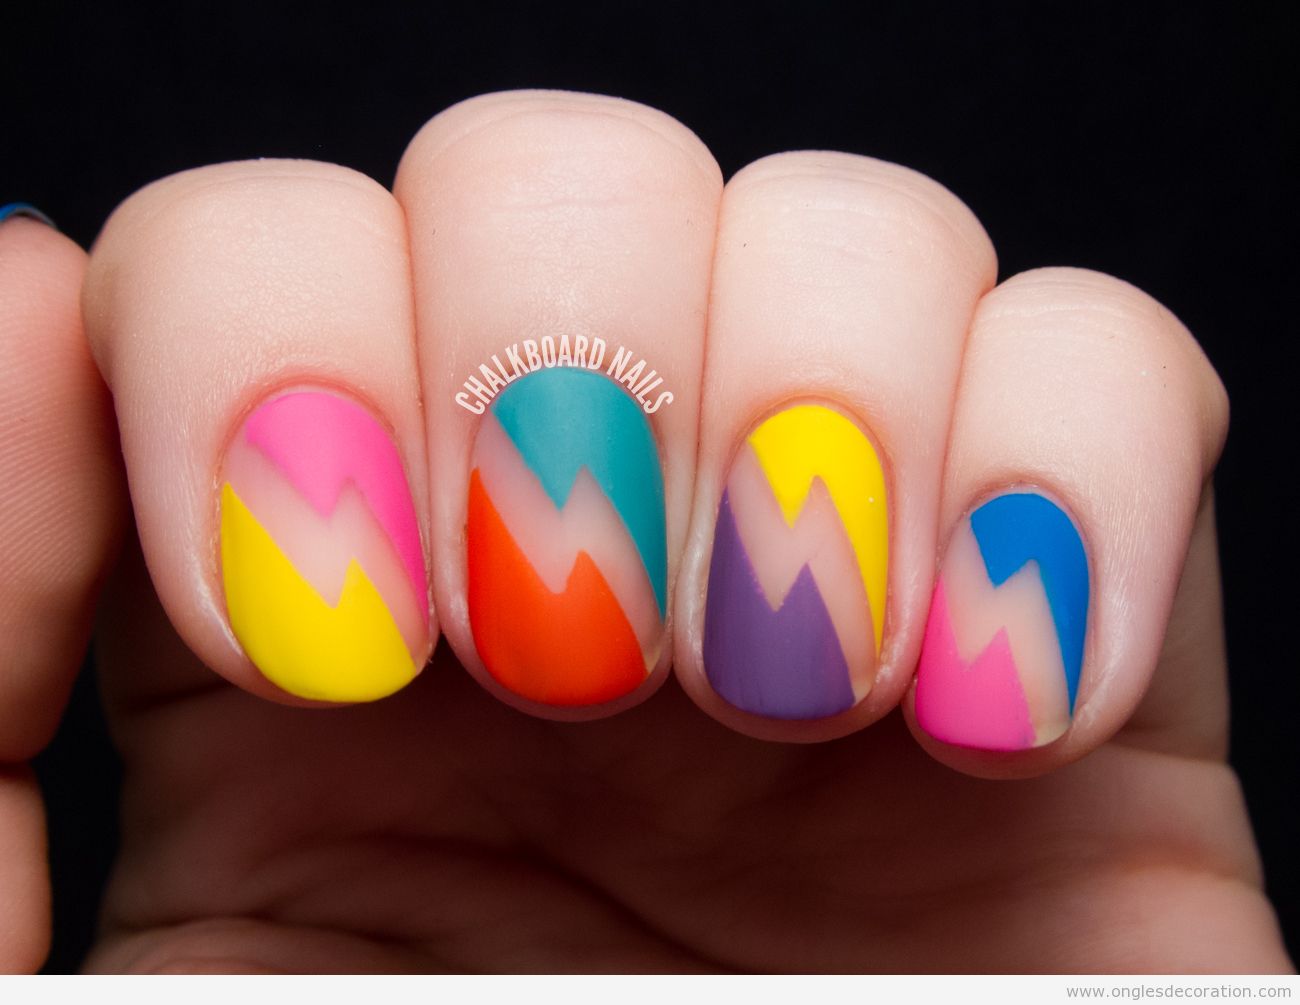 Déco ongles rayon couleurs en mat style années 80